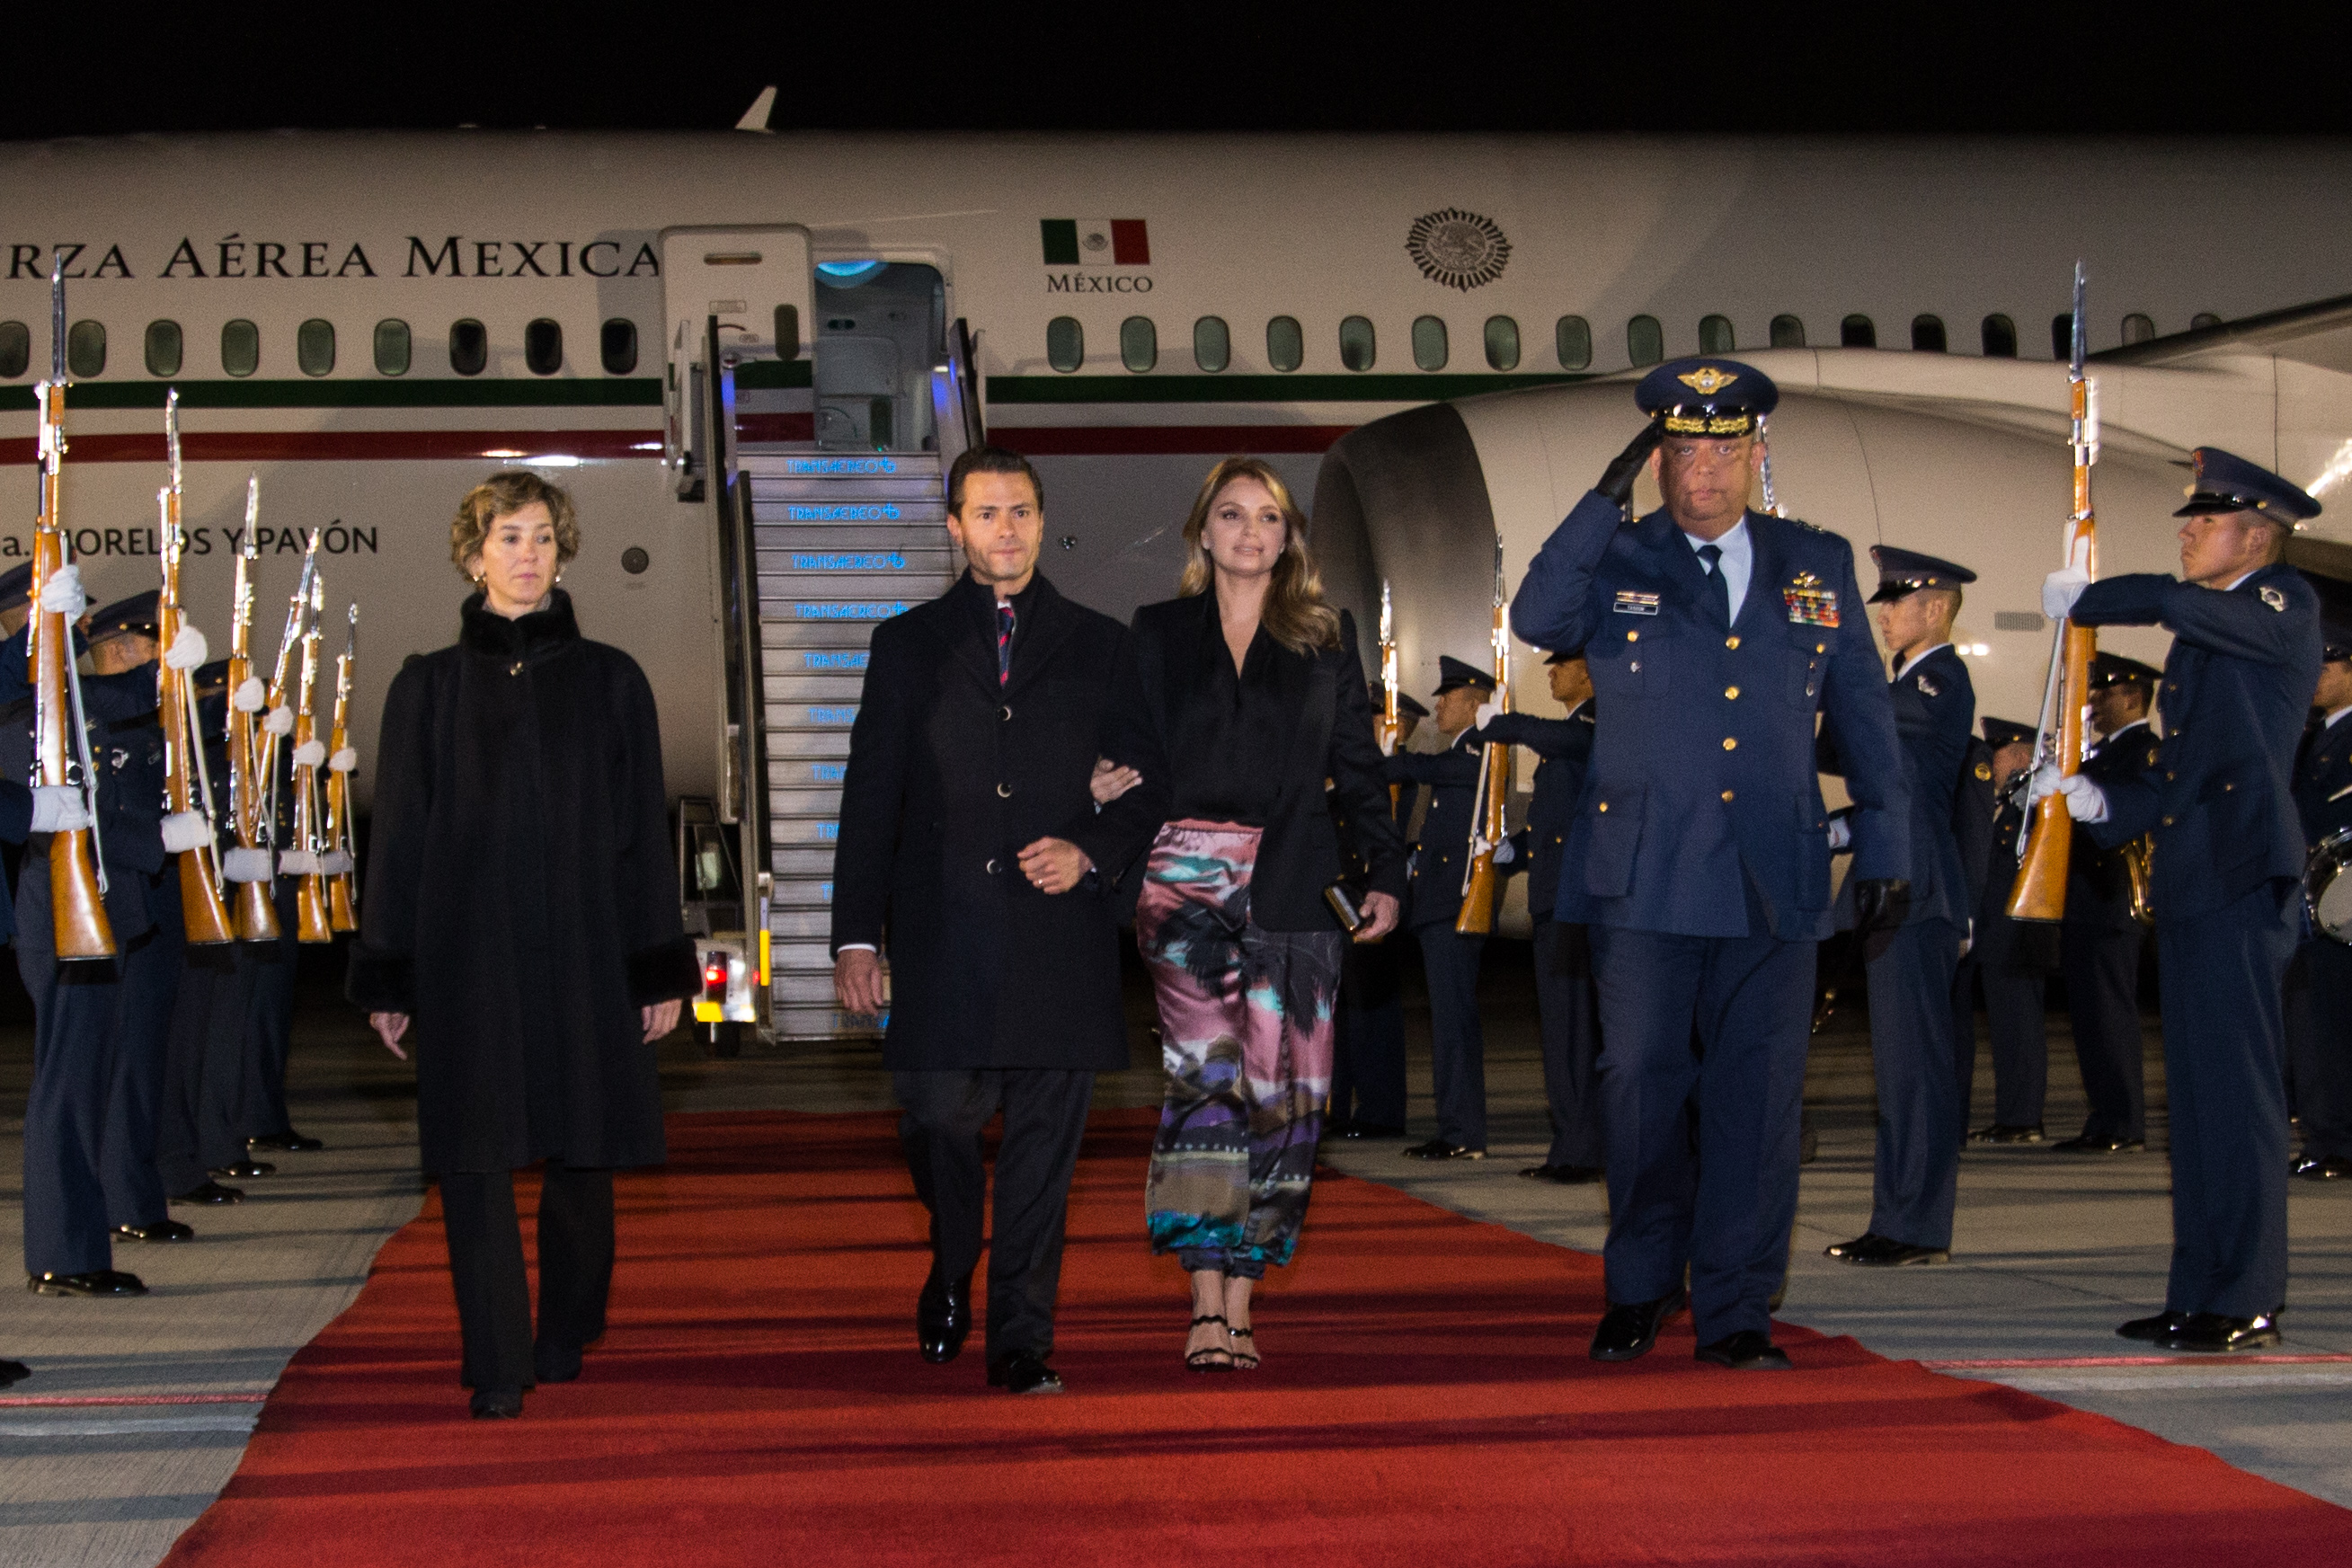 A la 1:00 am aterrizó en la Base Militar de Catam el Presidente de México Enrique Peña Nieto, quien fue recibido por la Viceministra de Relaciones Exteriores Patti Londoño.